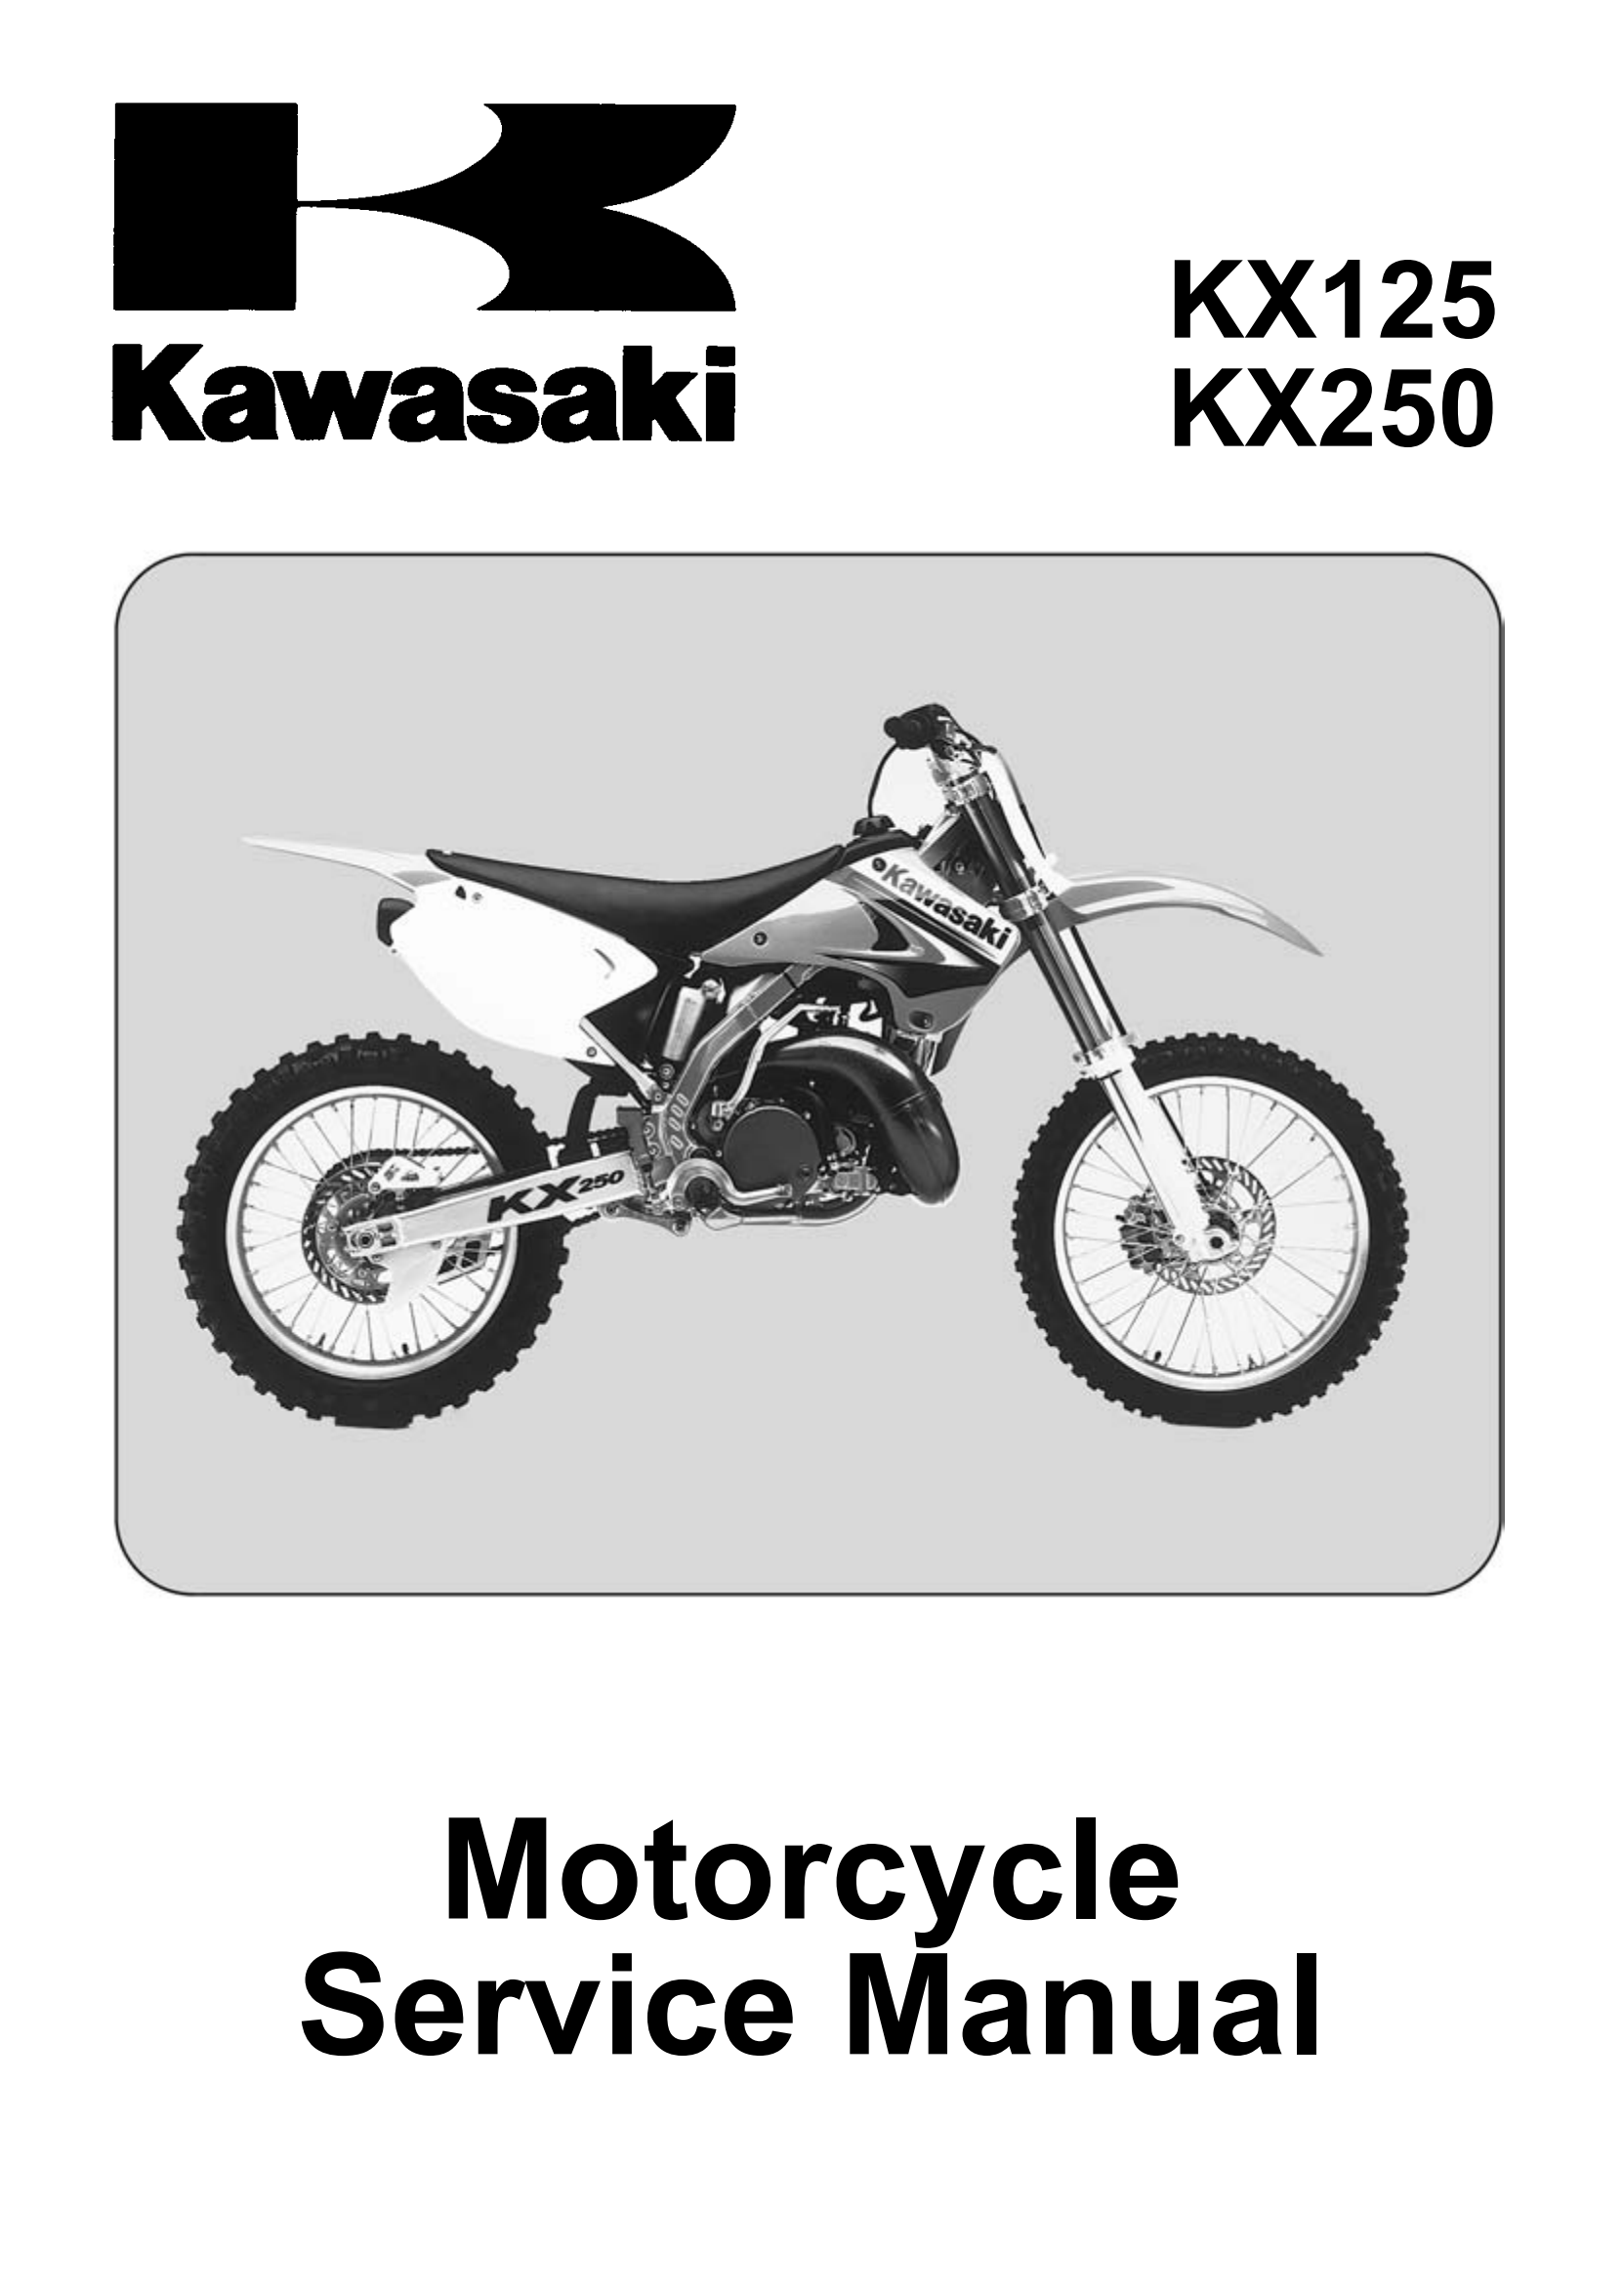 原版英文2003-2004年川崎kx125 kx250维修手册kawasaki kx125 kx250 维修手册插图